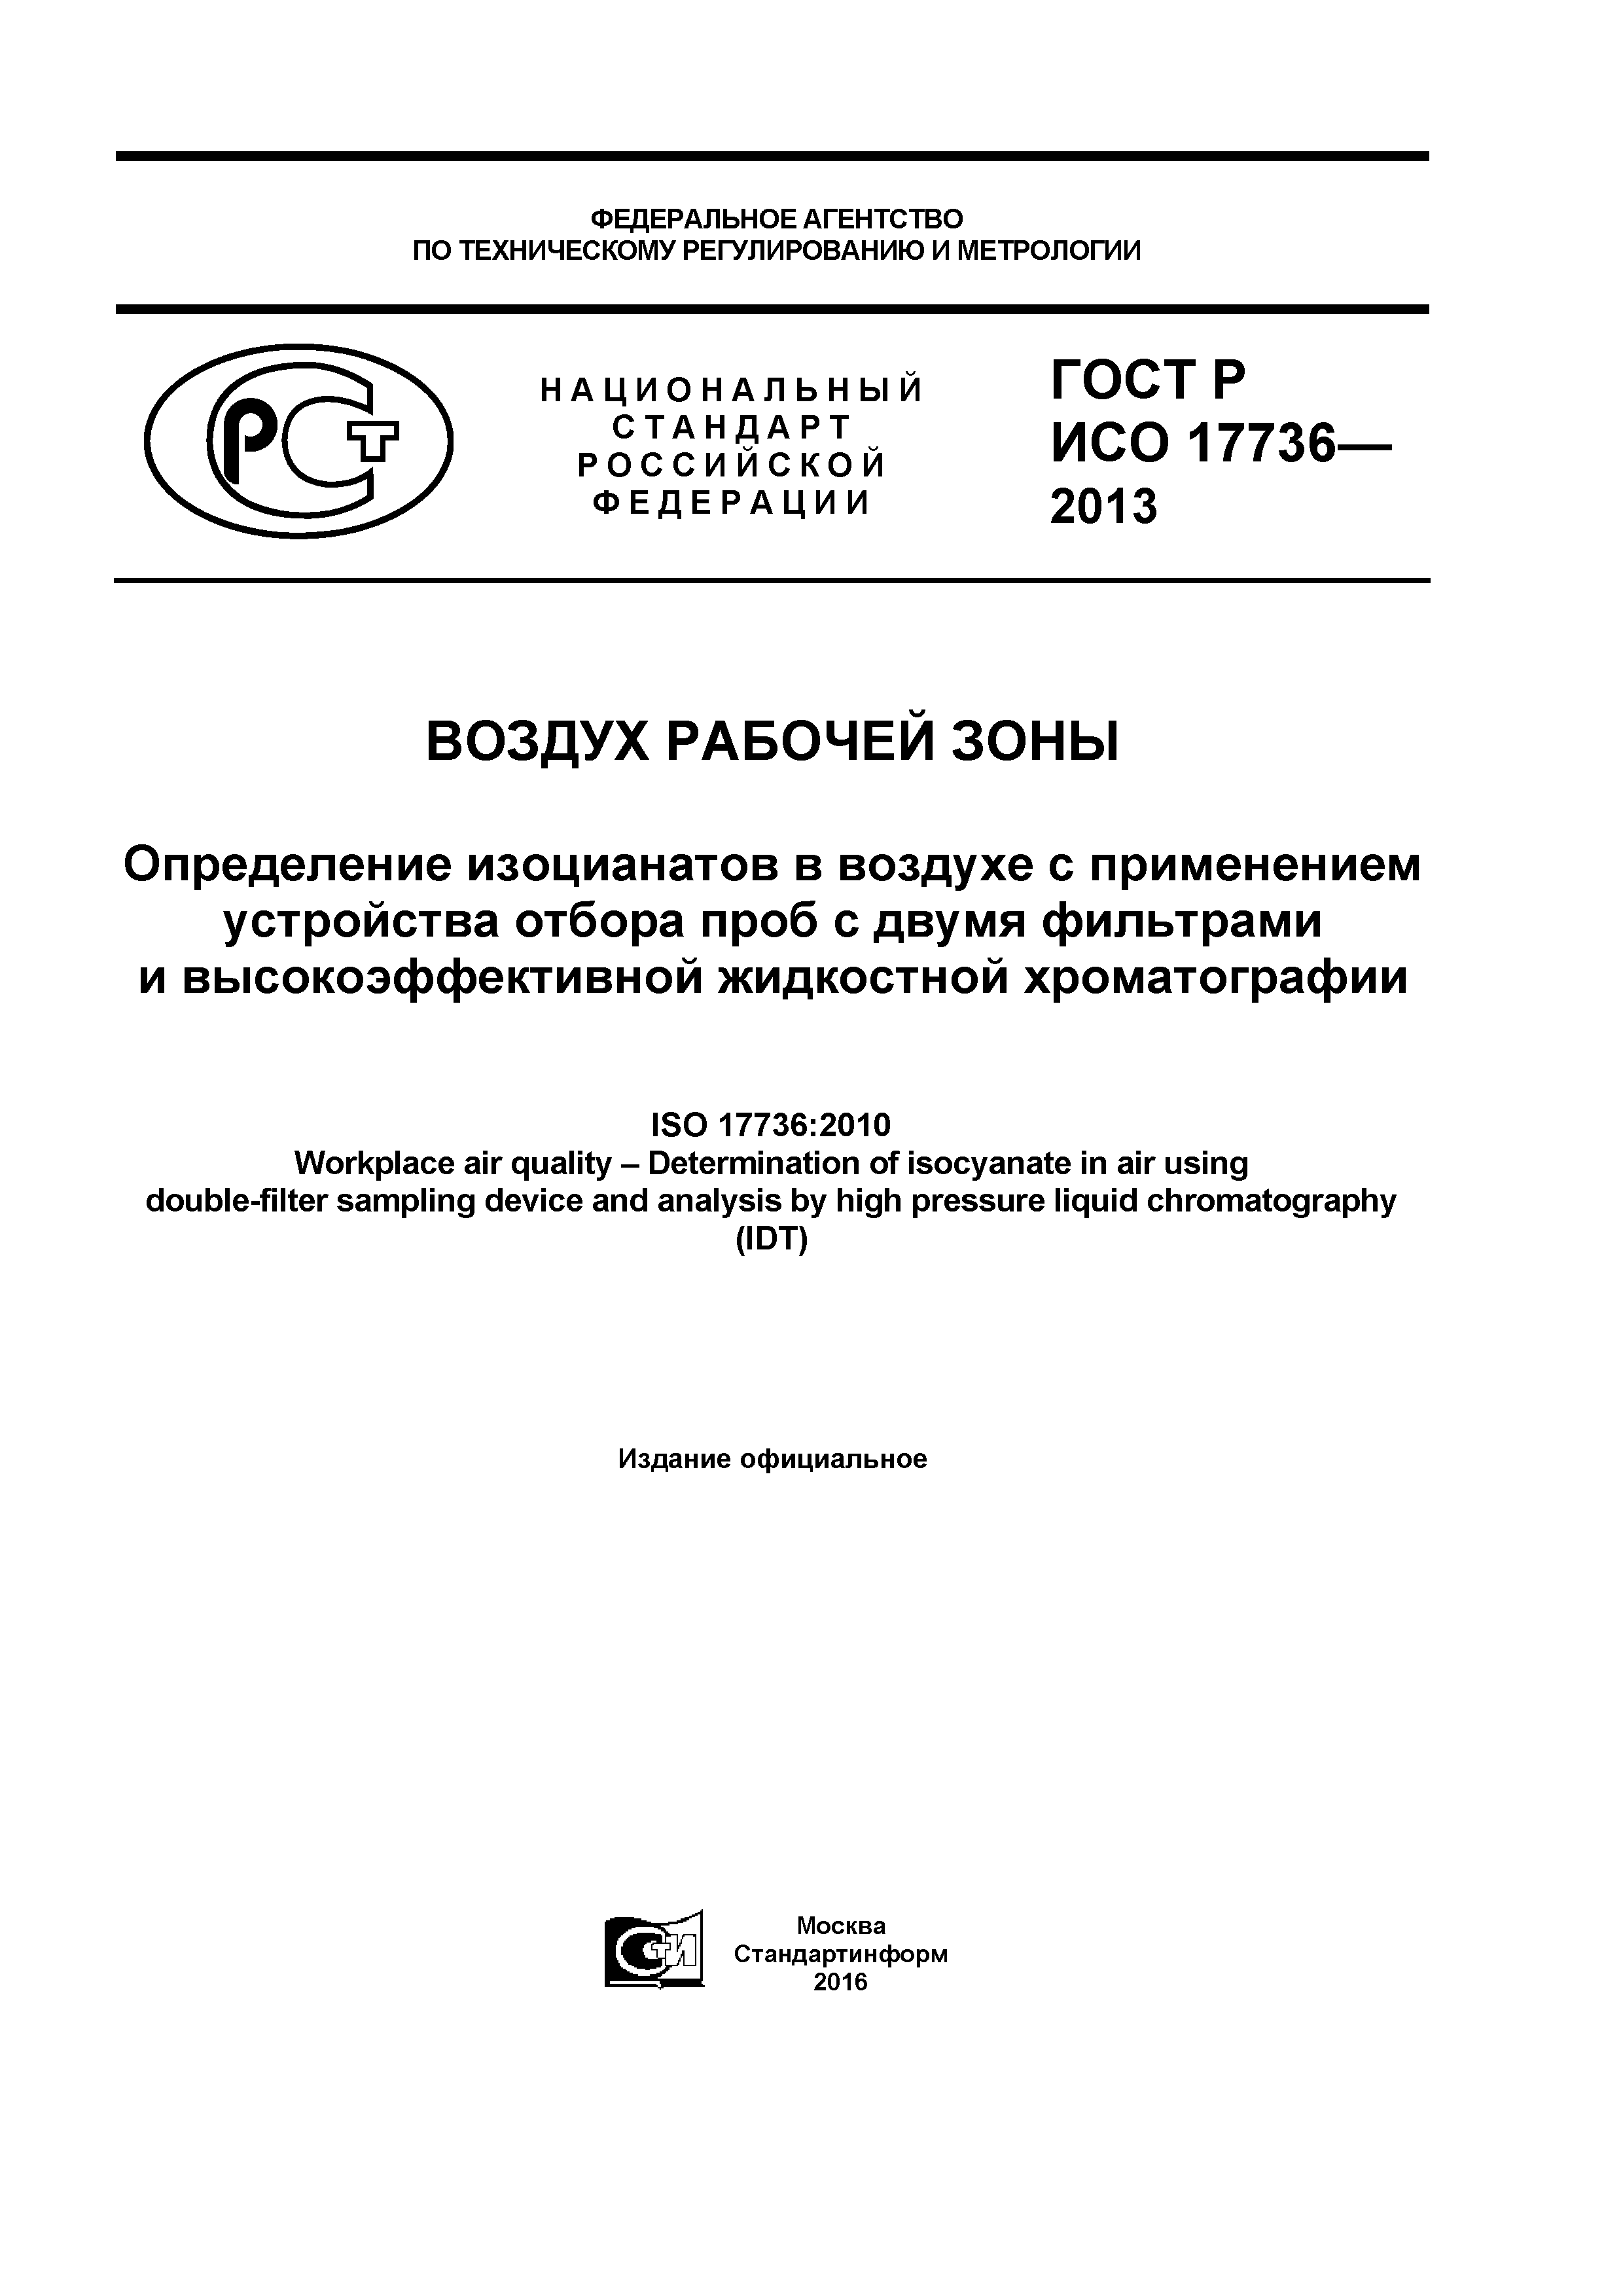 ГОСТ Р ИСО 17736-2013